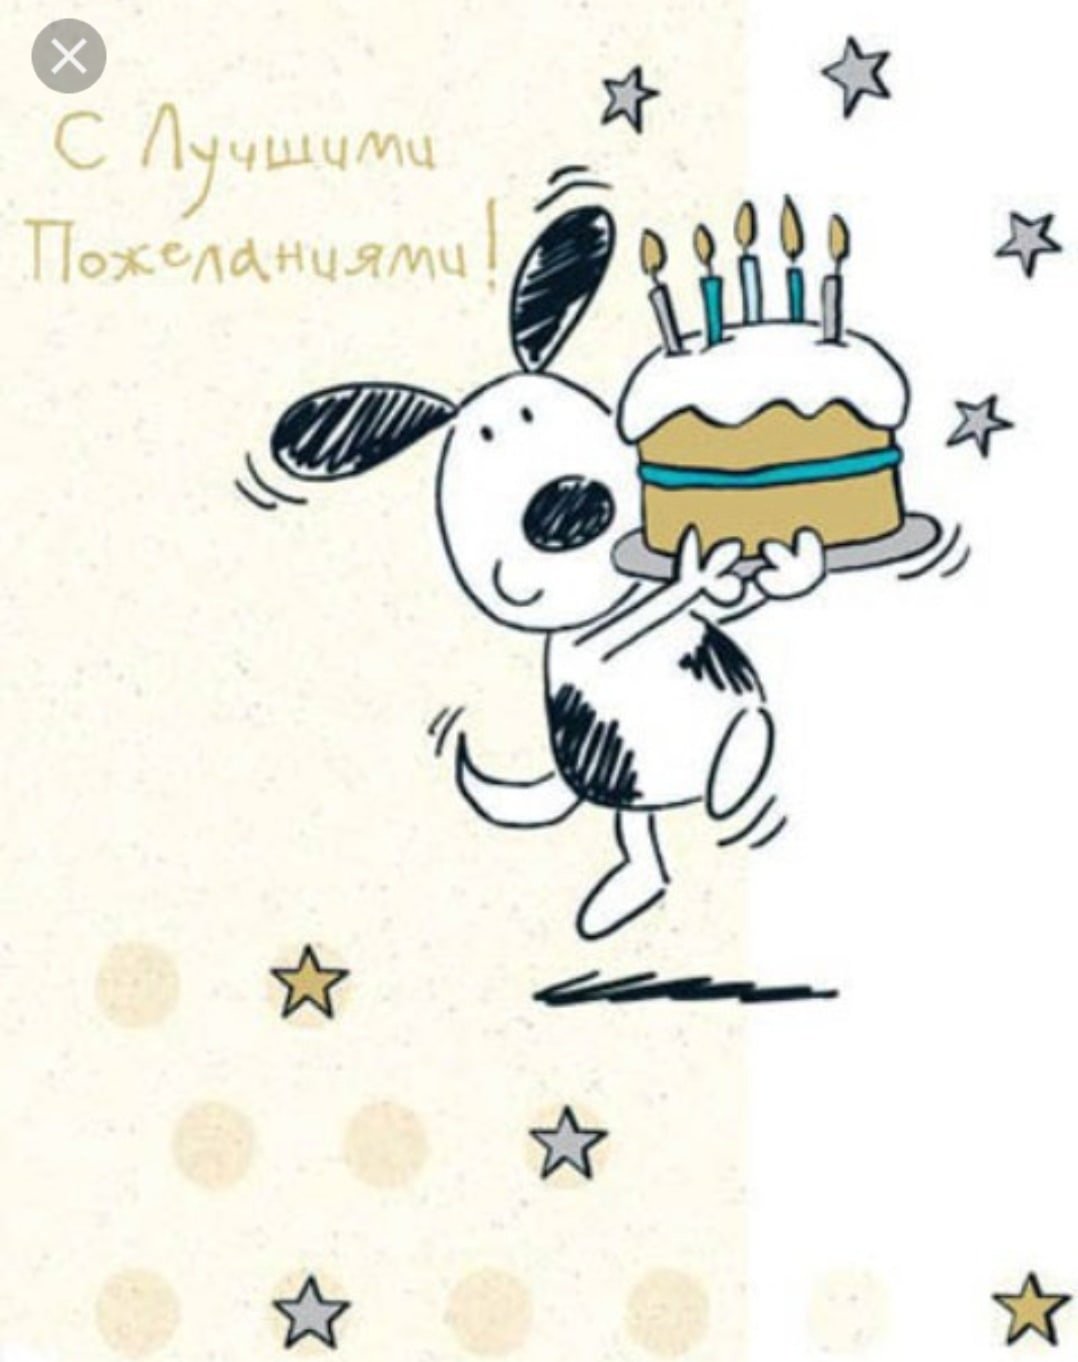 Www поздравь ru. С днем рождения. Открытка с днём рождения. Стильные открытки с днем рождения. С͇ д͇н͇е͇ р͇о͇ж͇д͇е͇н͇и͇я͇.